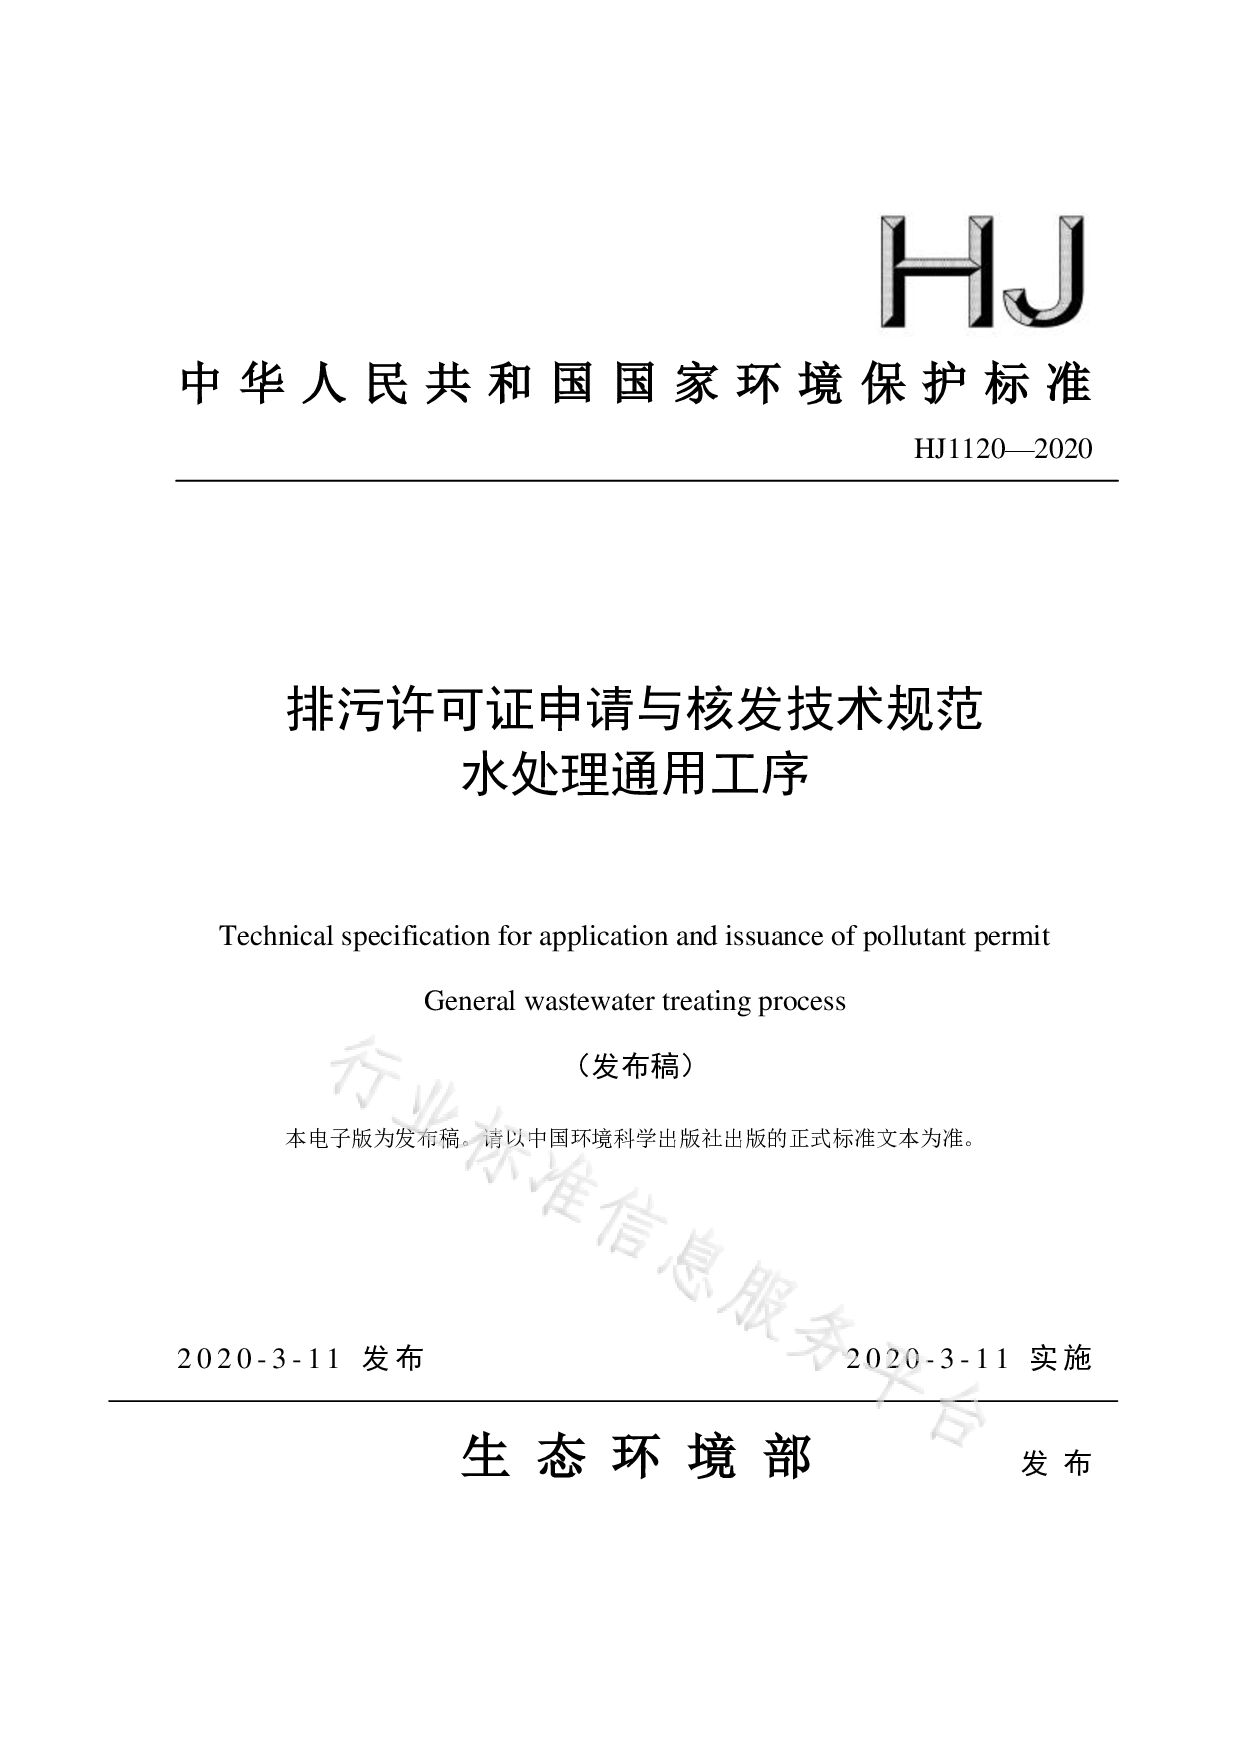 HJ 1120-2020封面图